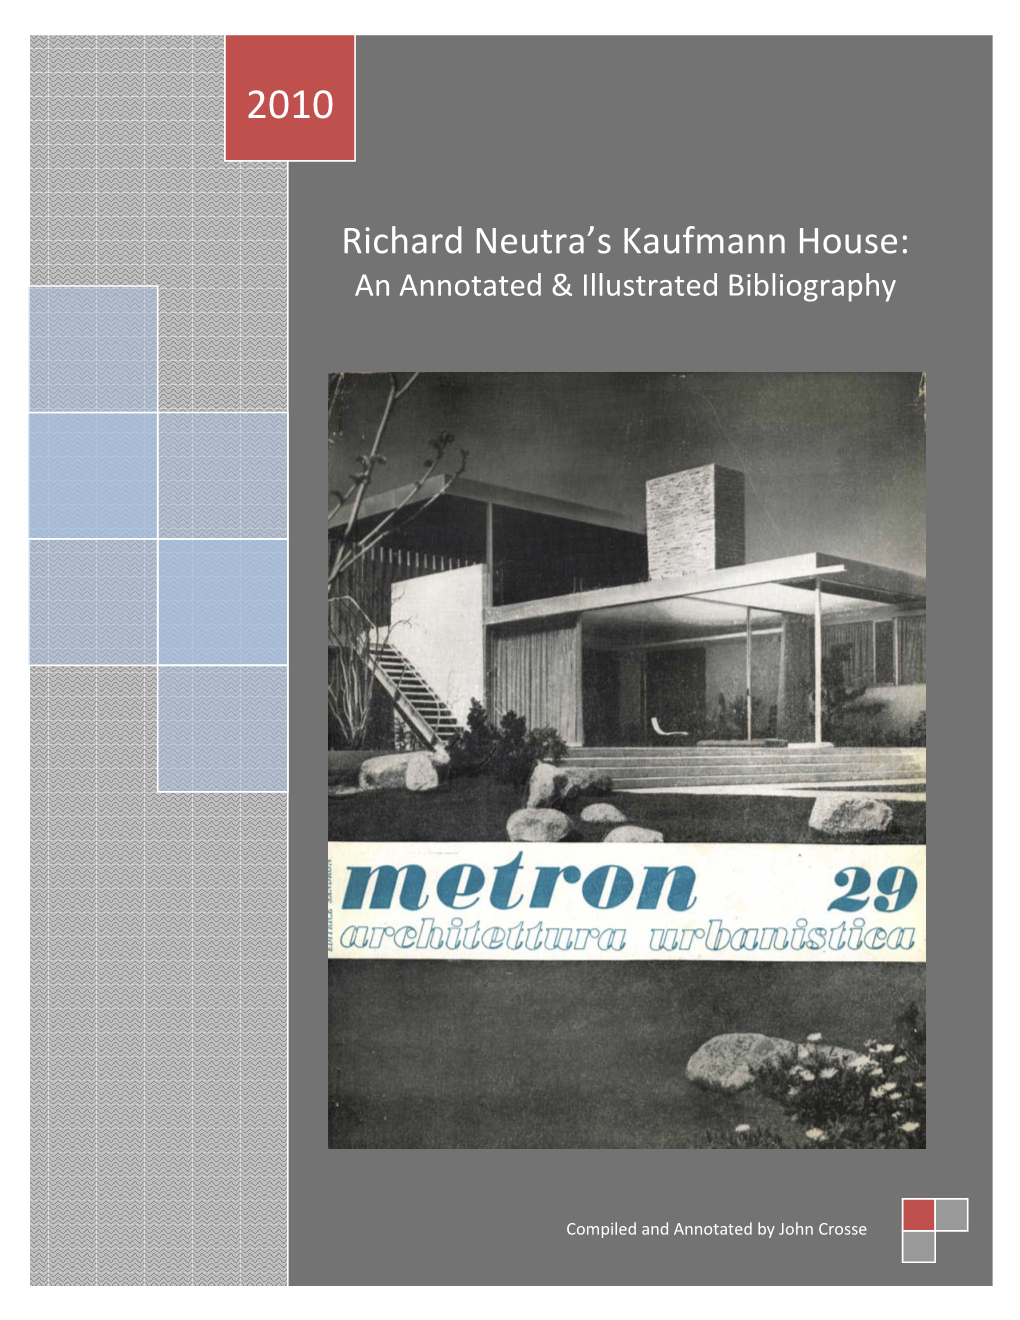 Richard Neutra's Kaufmann House